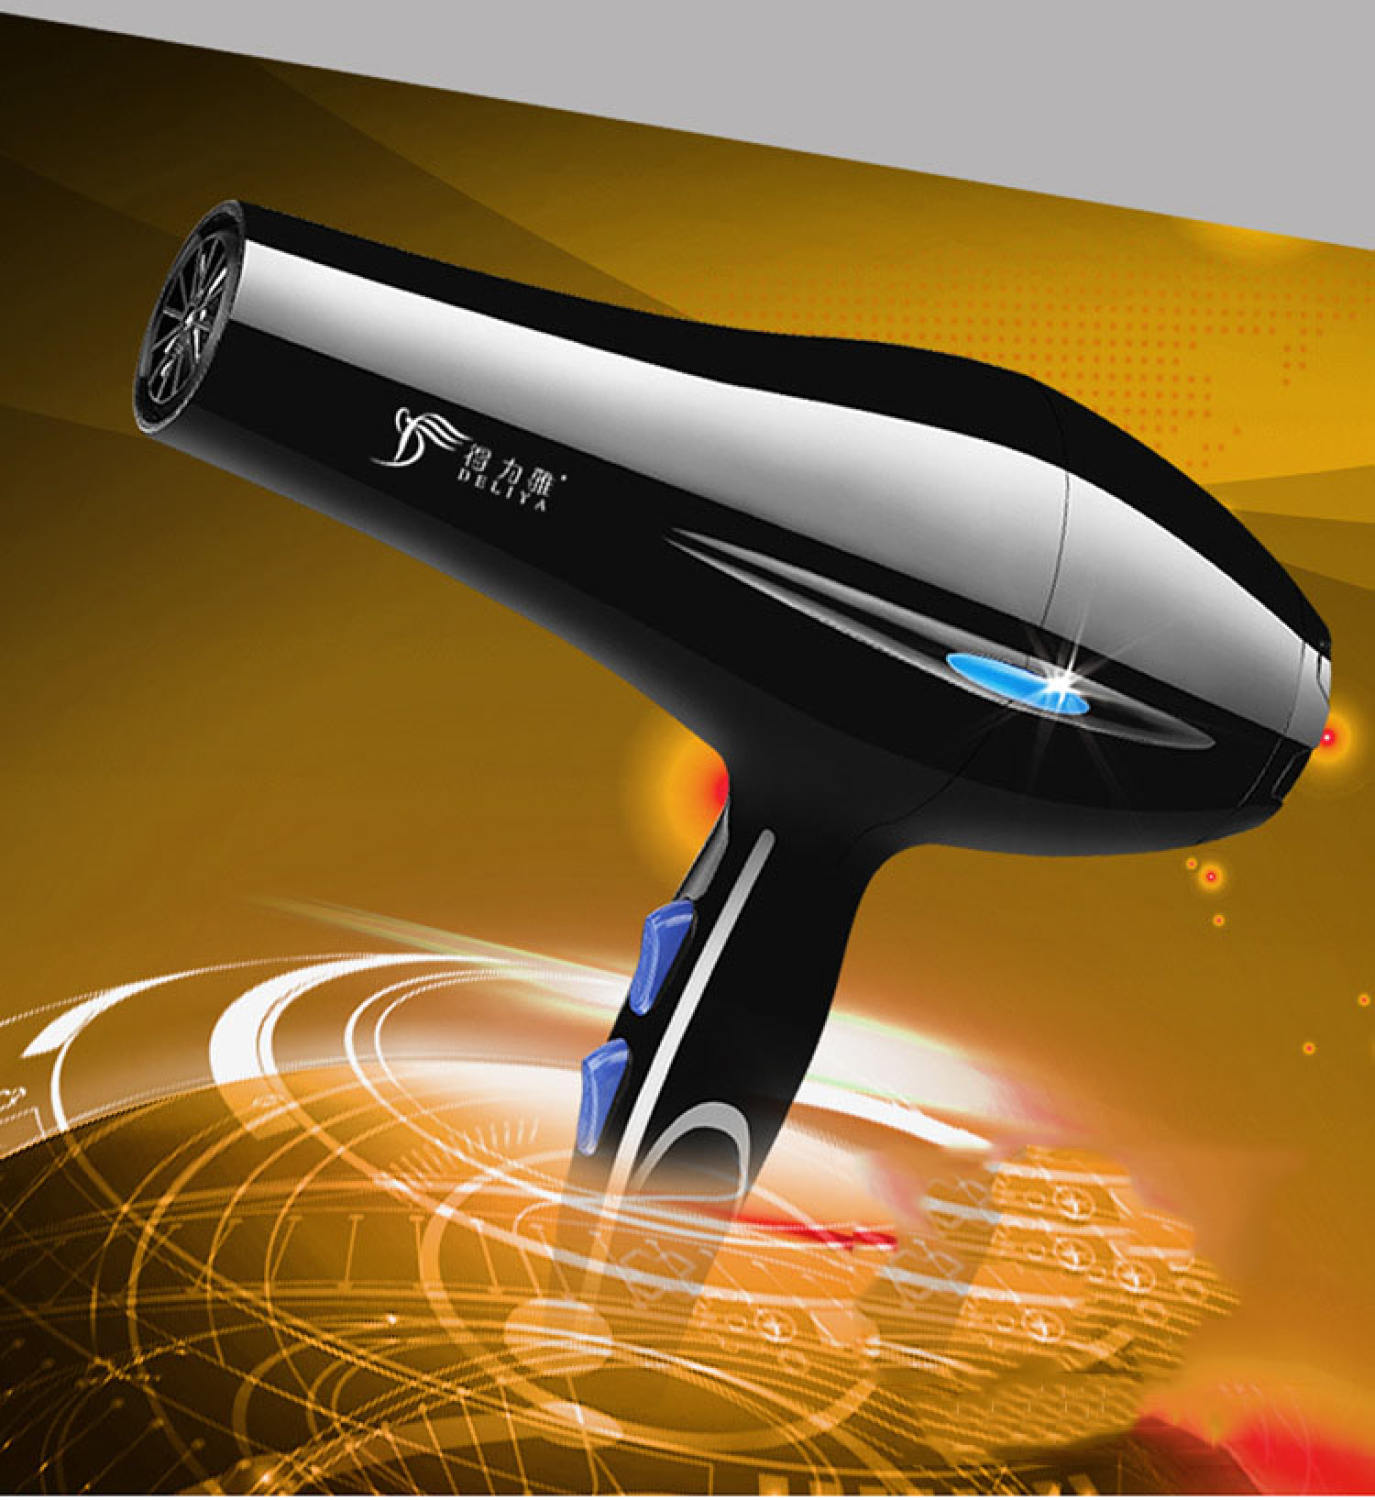 Máy sấy tóc Deliya công suất 2200W 3 chiều nóng, vừa, mát với 2 mức nhiệt độ - Bảo hành giá rẻ